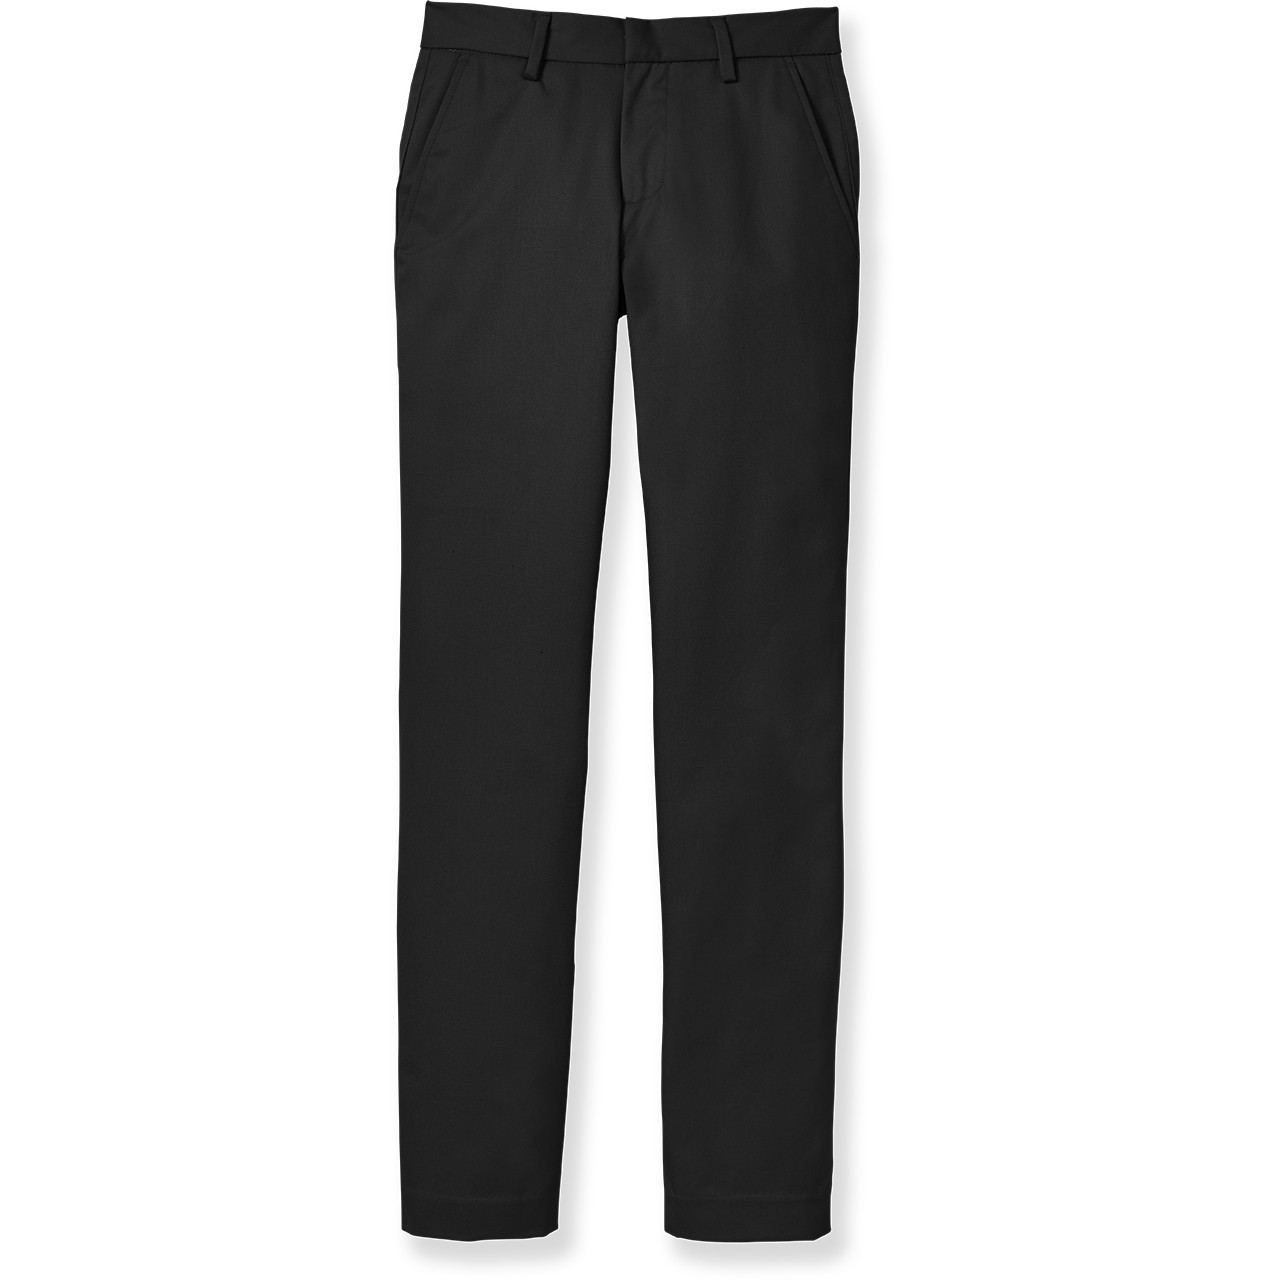 Men's Classic Pants [MD334-CLASSICS-BLACK] - FlynnO'Hara Uniforms